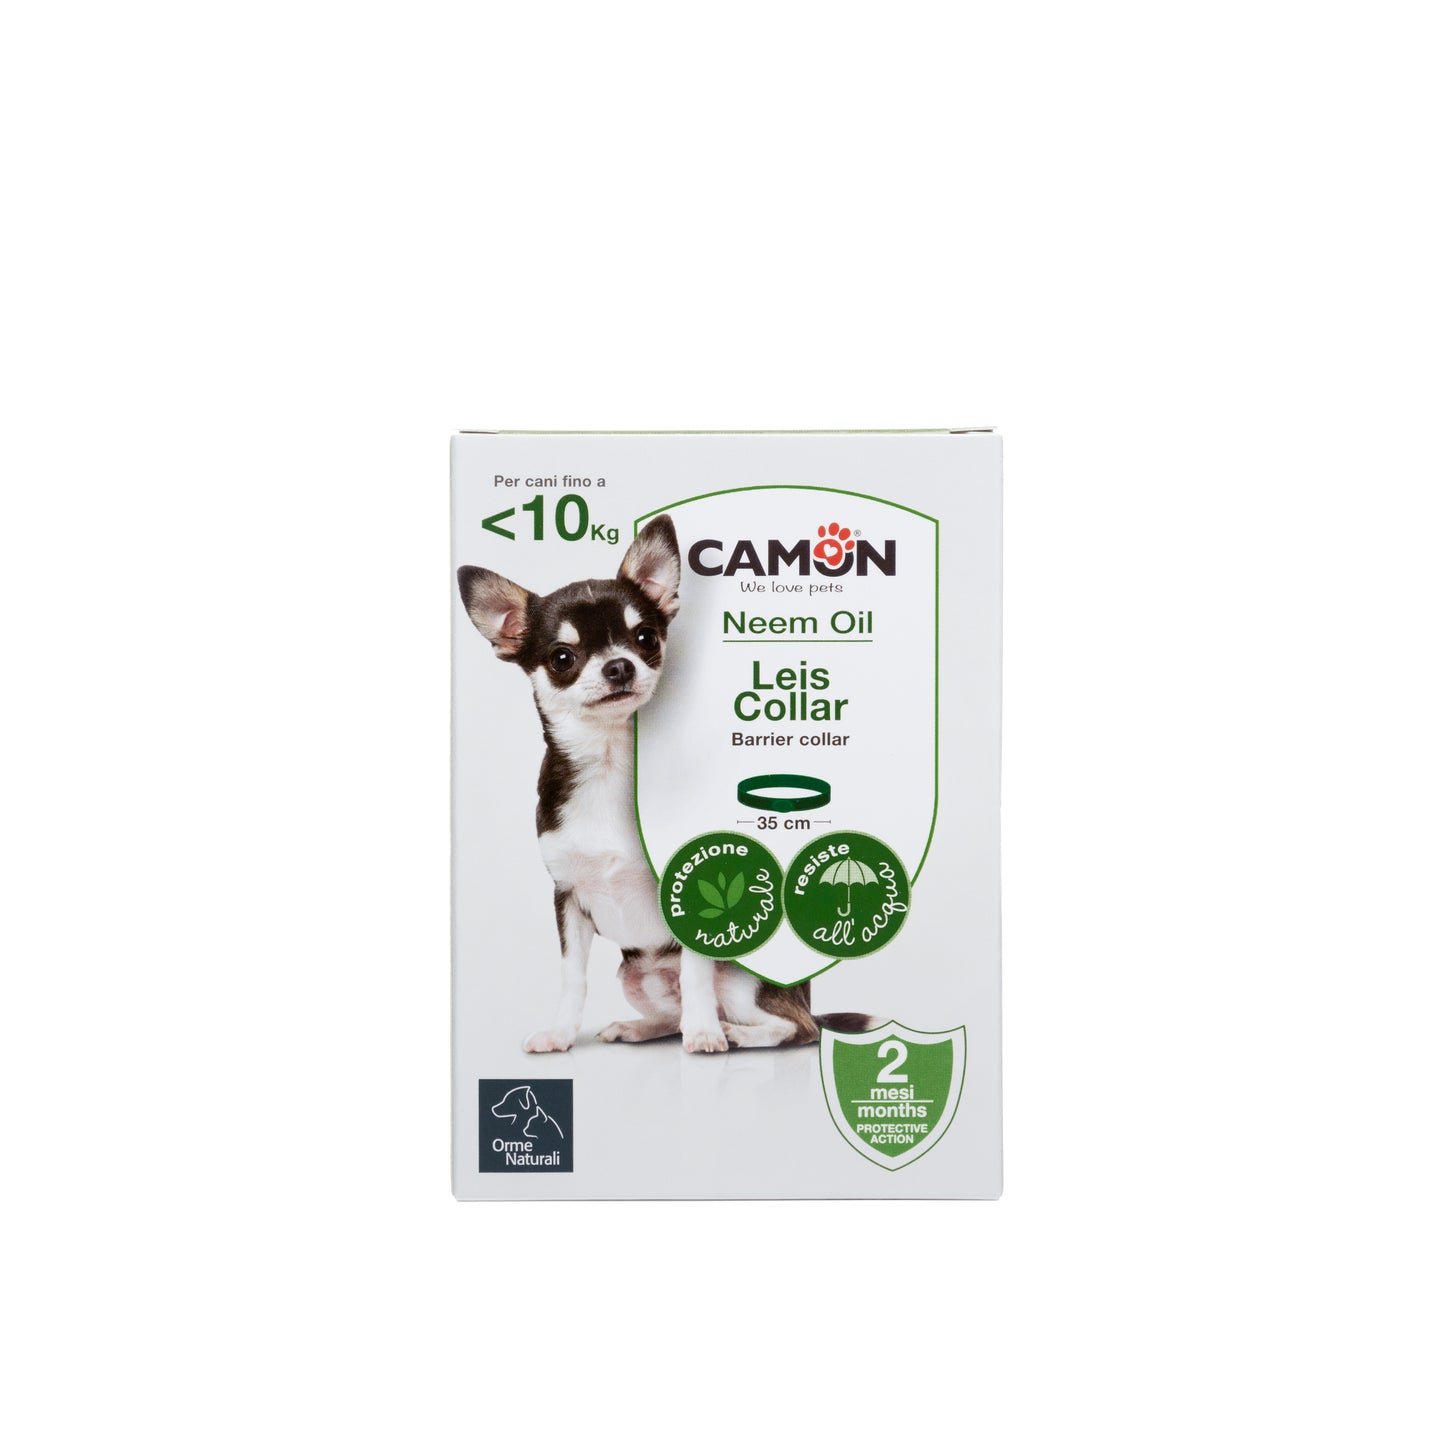 Camon - Orme Naturali - Collare Leis per cani - 35cm - Fino a 10kg